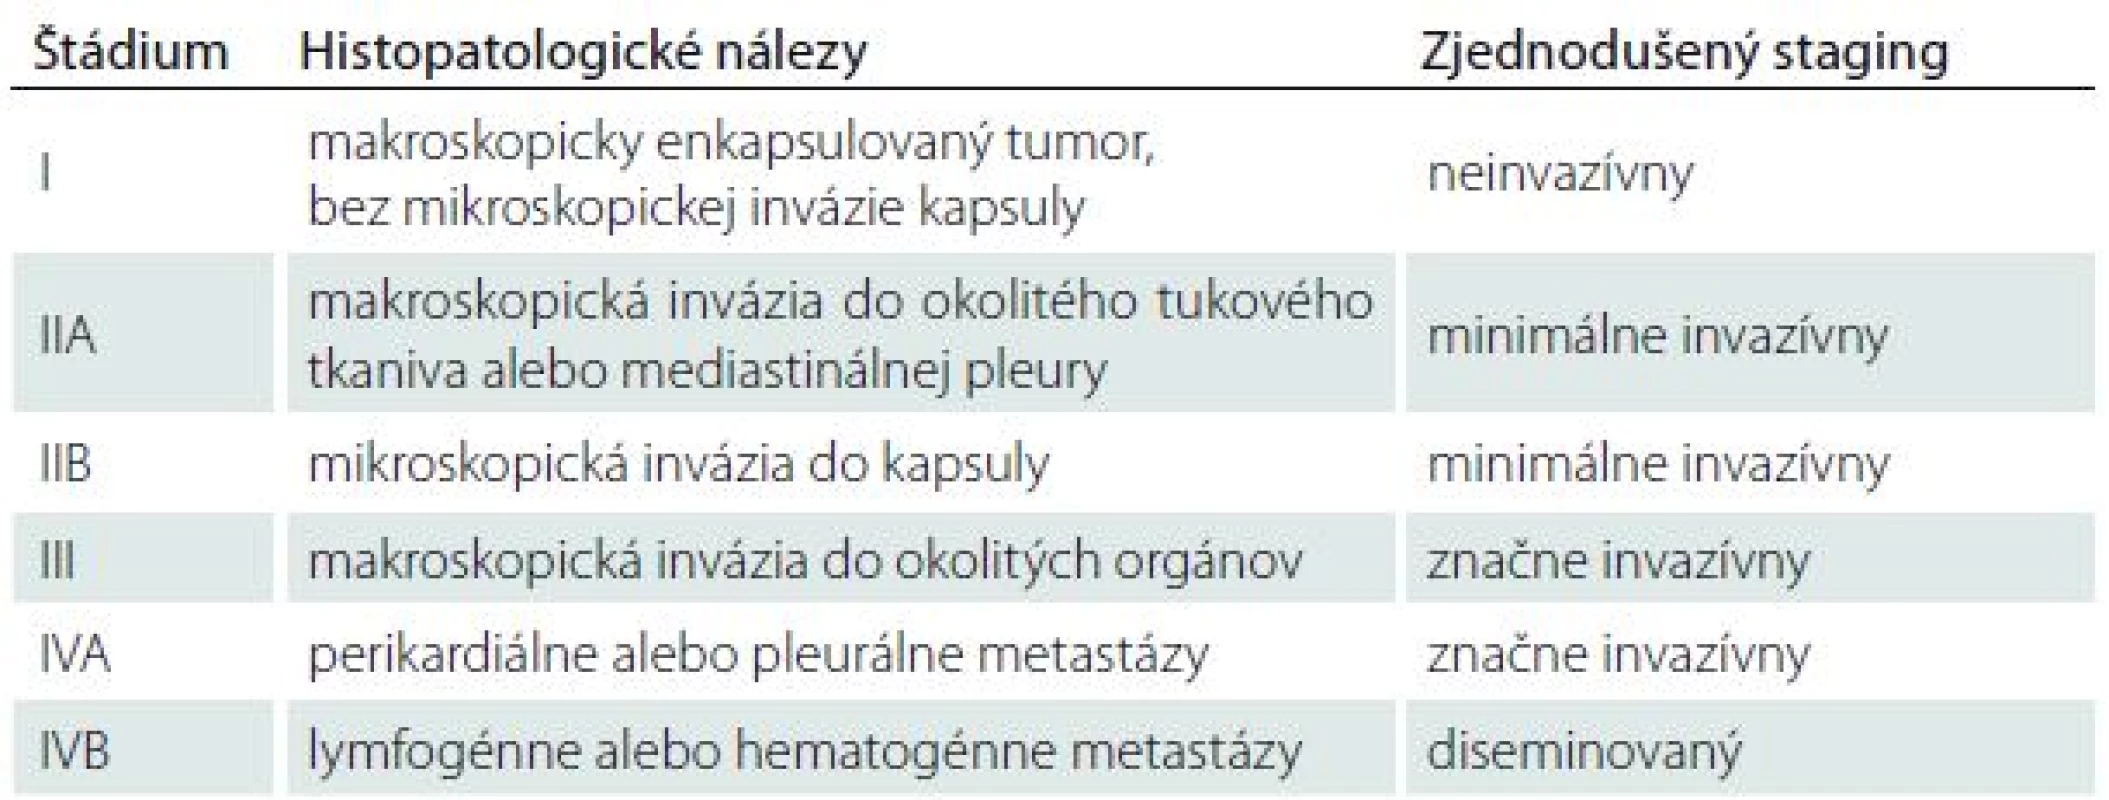 Klinicko-patologická klasifikácia štádií invazivity podľa Masaoku [10].